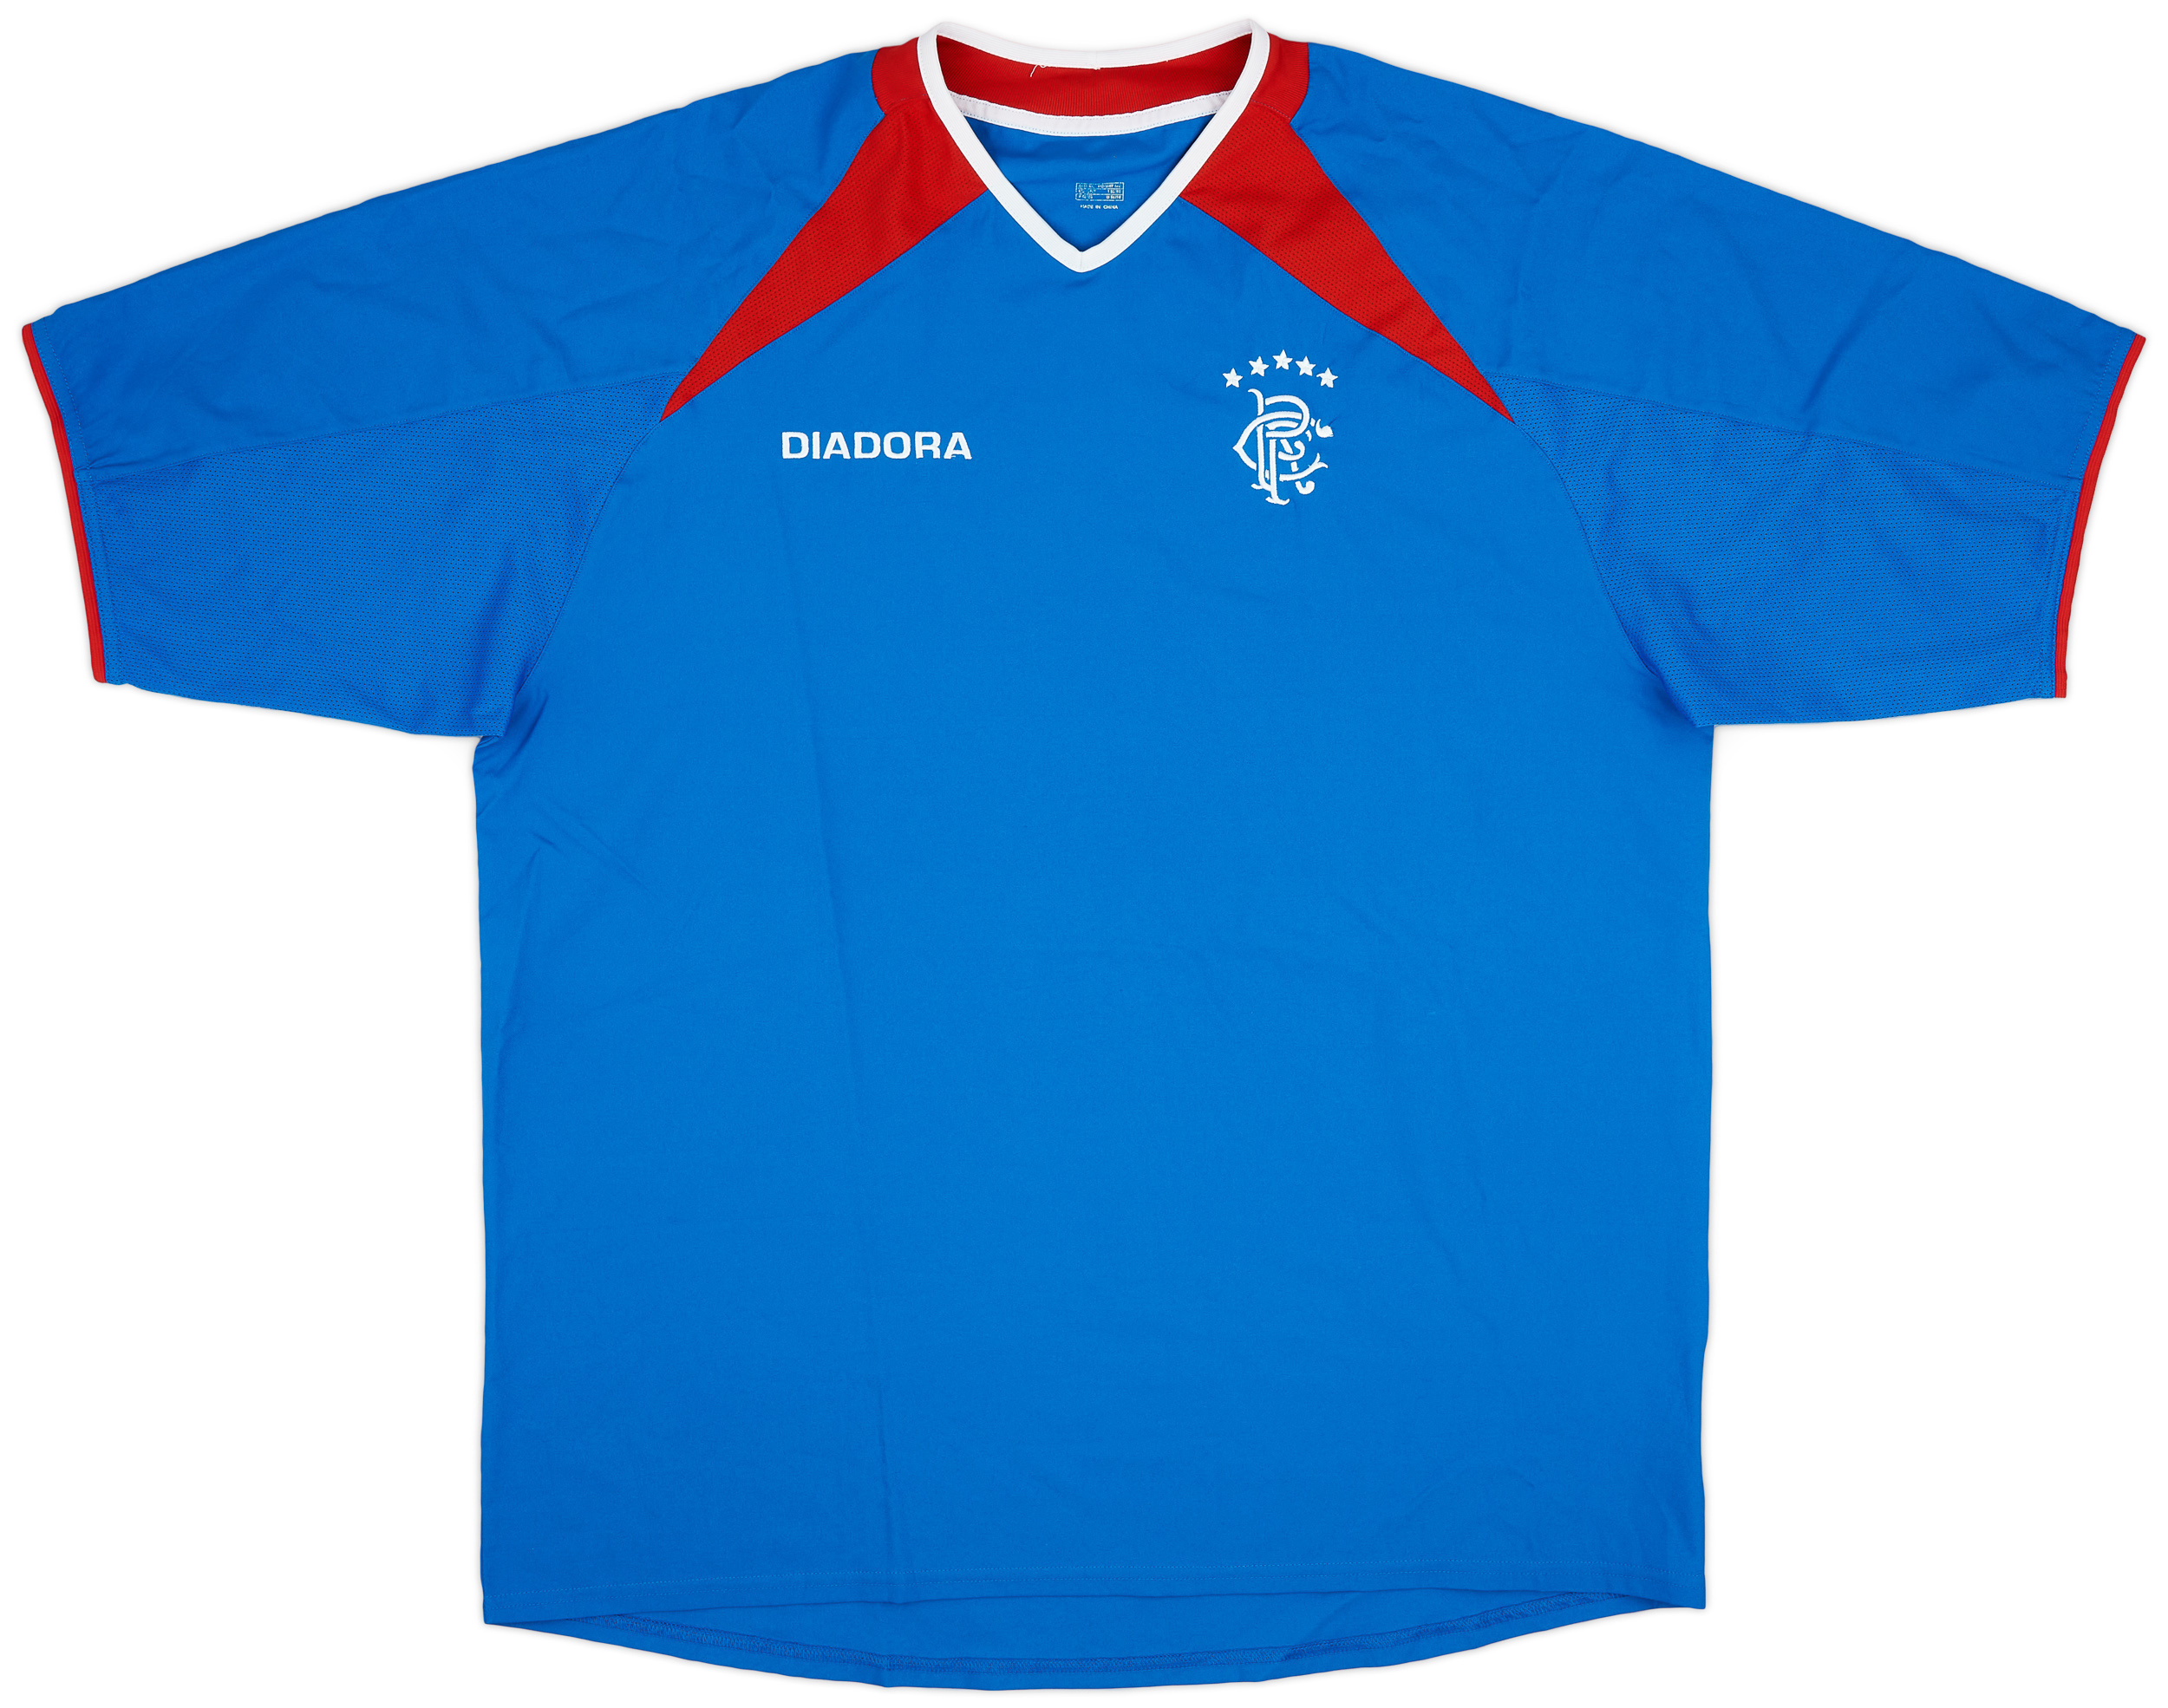 2003-04 Rangers Home Shirt - 8/10 - ()